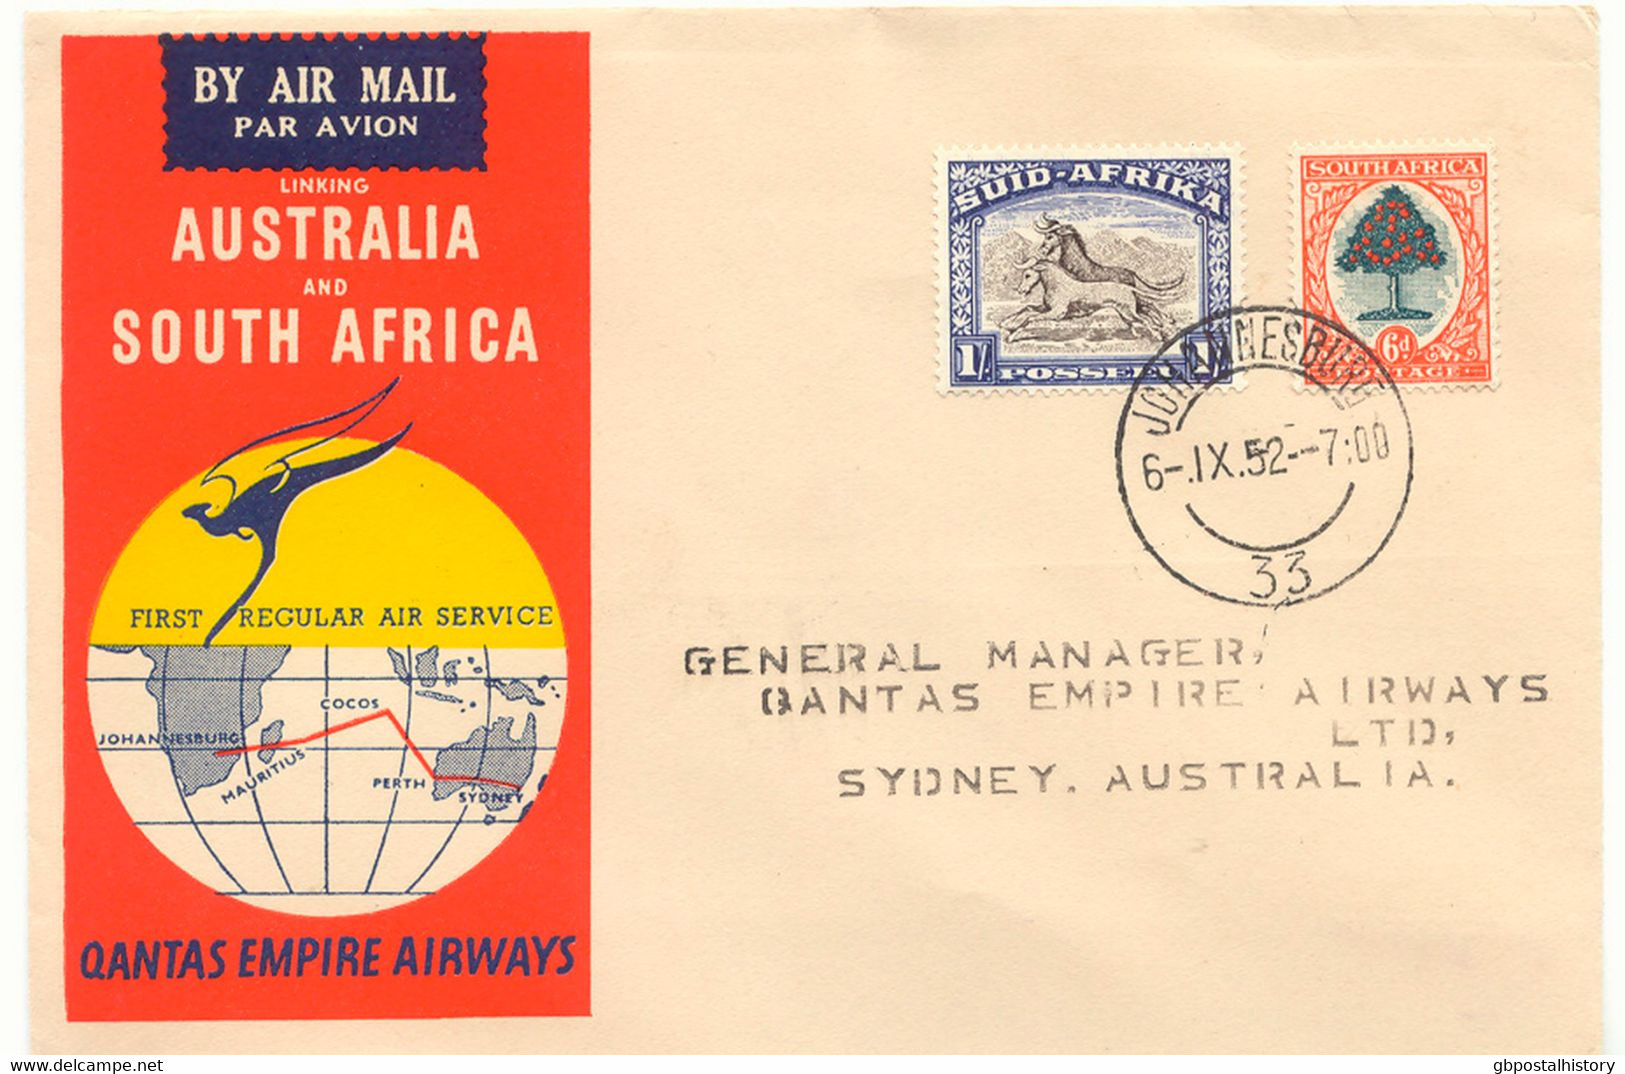 SÜDAFRIKA 1952 Mischfrankatur A. 3 Selt. Kab.-Erstflüge Der Qantas Empire Airways, Teilstrecken "JOHANNESBURG - COCOS IS - Poste Aérienne